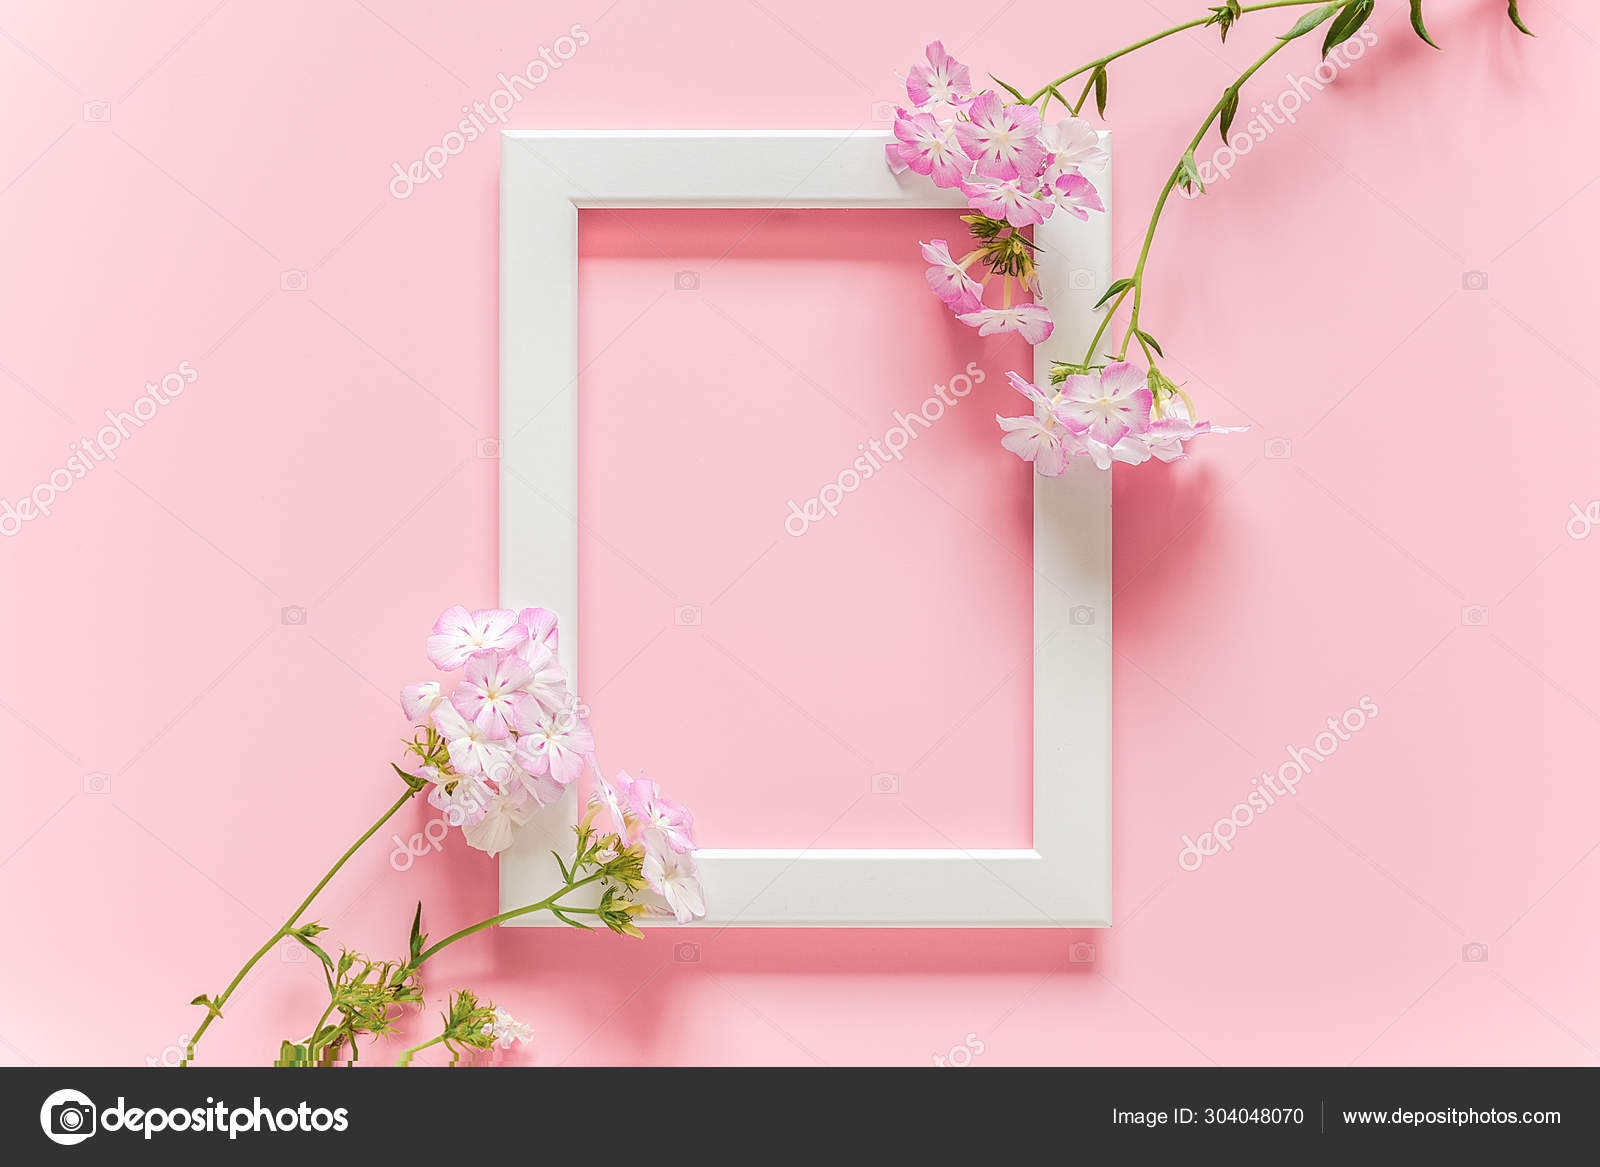 Moldura de madeira branca e flores no fundo rosa com espaço de